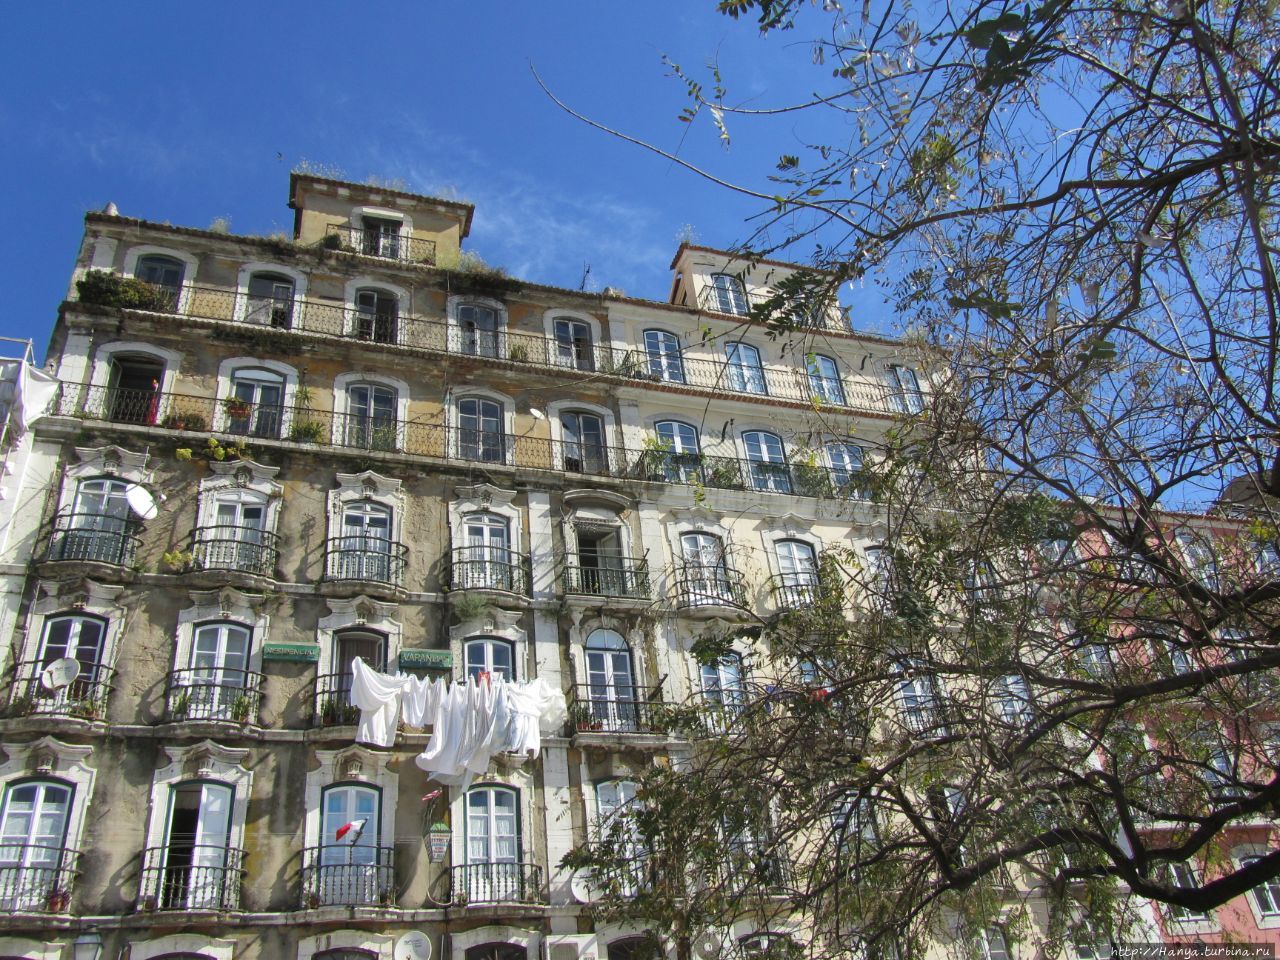 Дом с балконами (Каза даш Варандаш) Лиссабон, Португалия